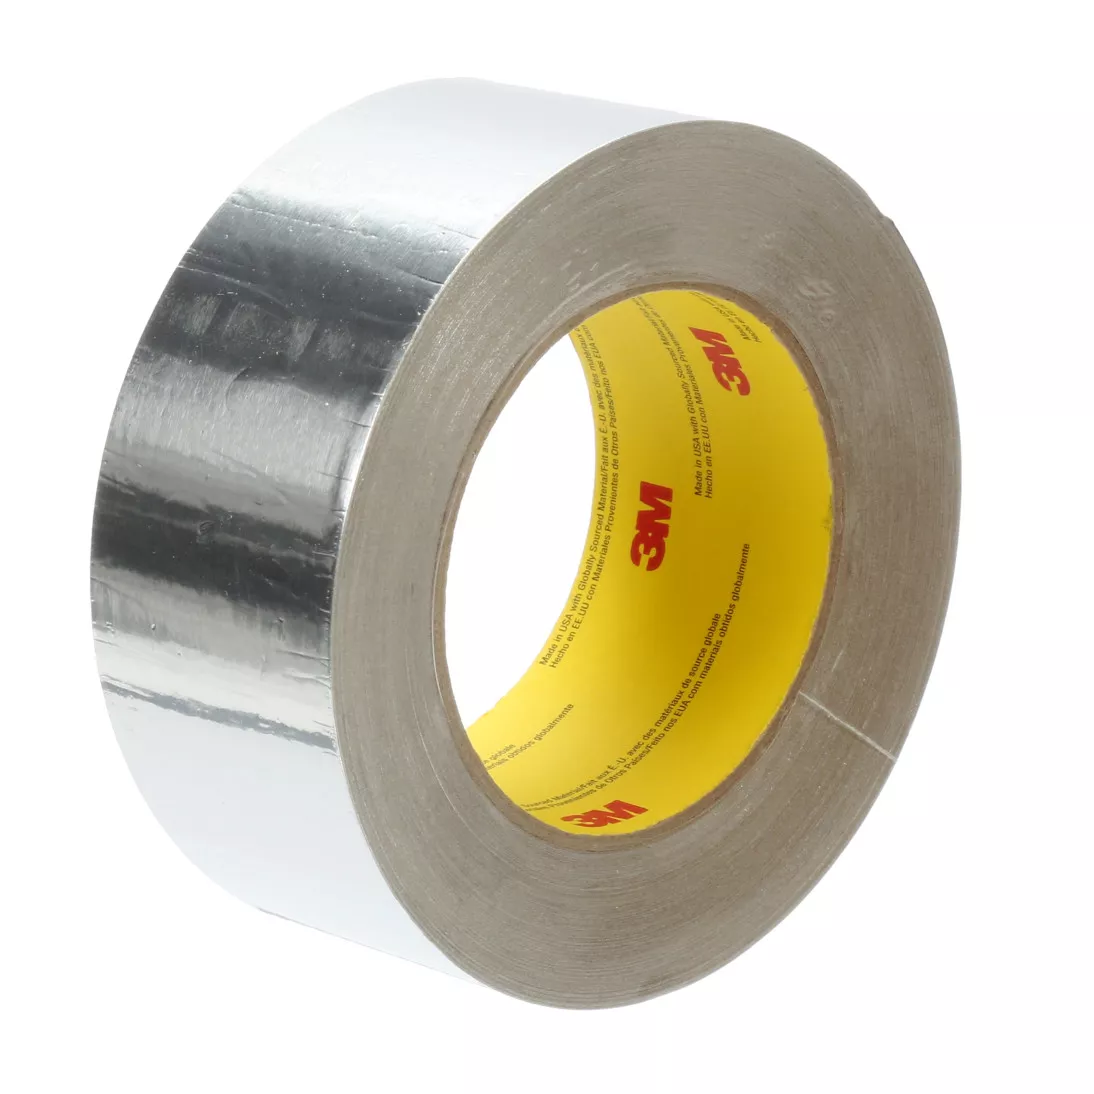 3M™ Venture Tape™ Aluminum Foil Tape 1521CW, Silver, 48 mm x 45.7 m, 2.8
mil, 24 rolls per case